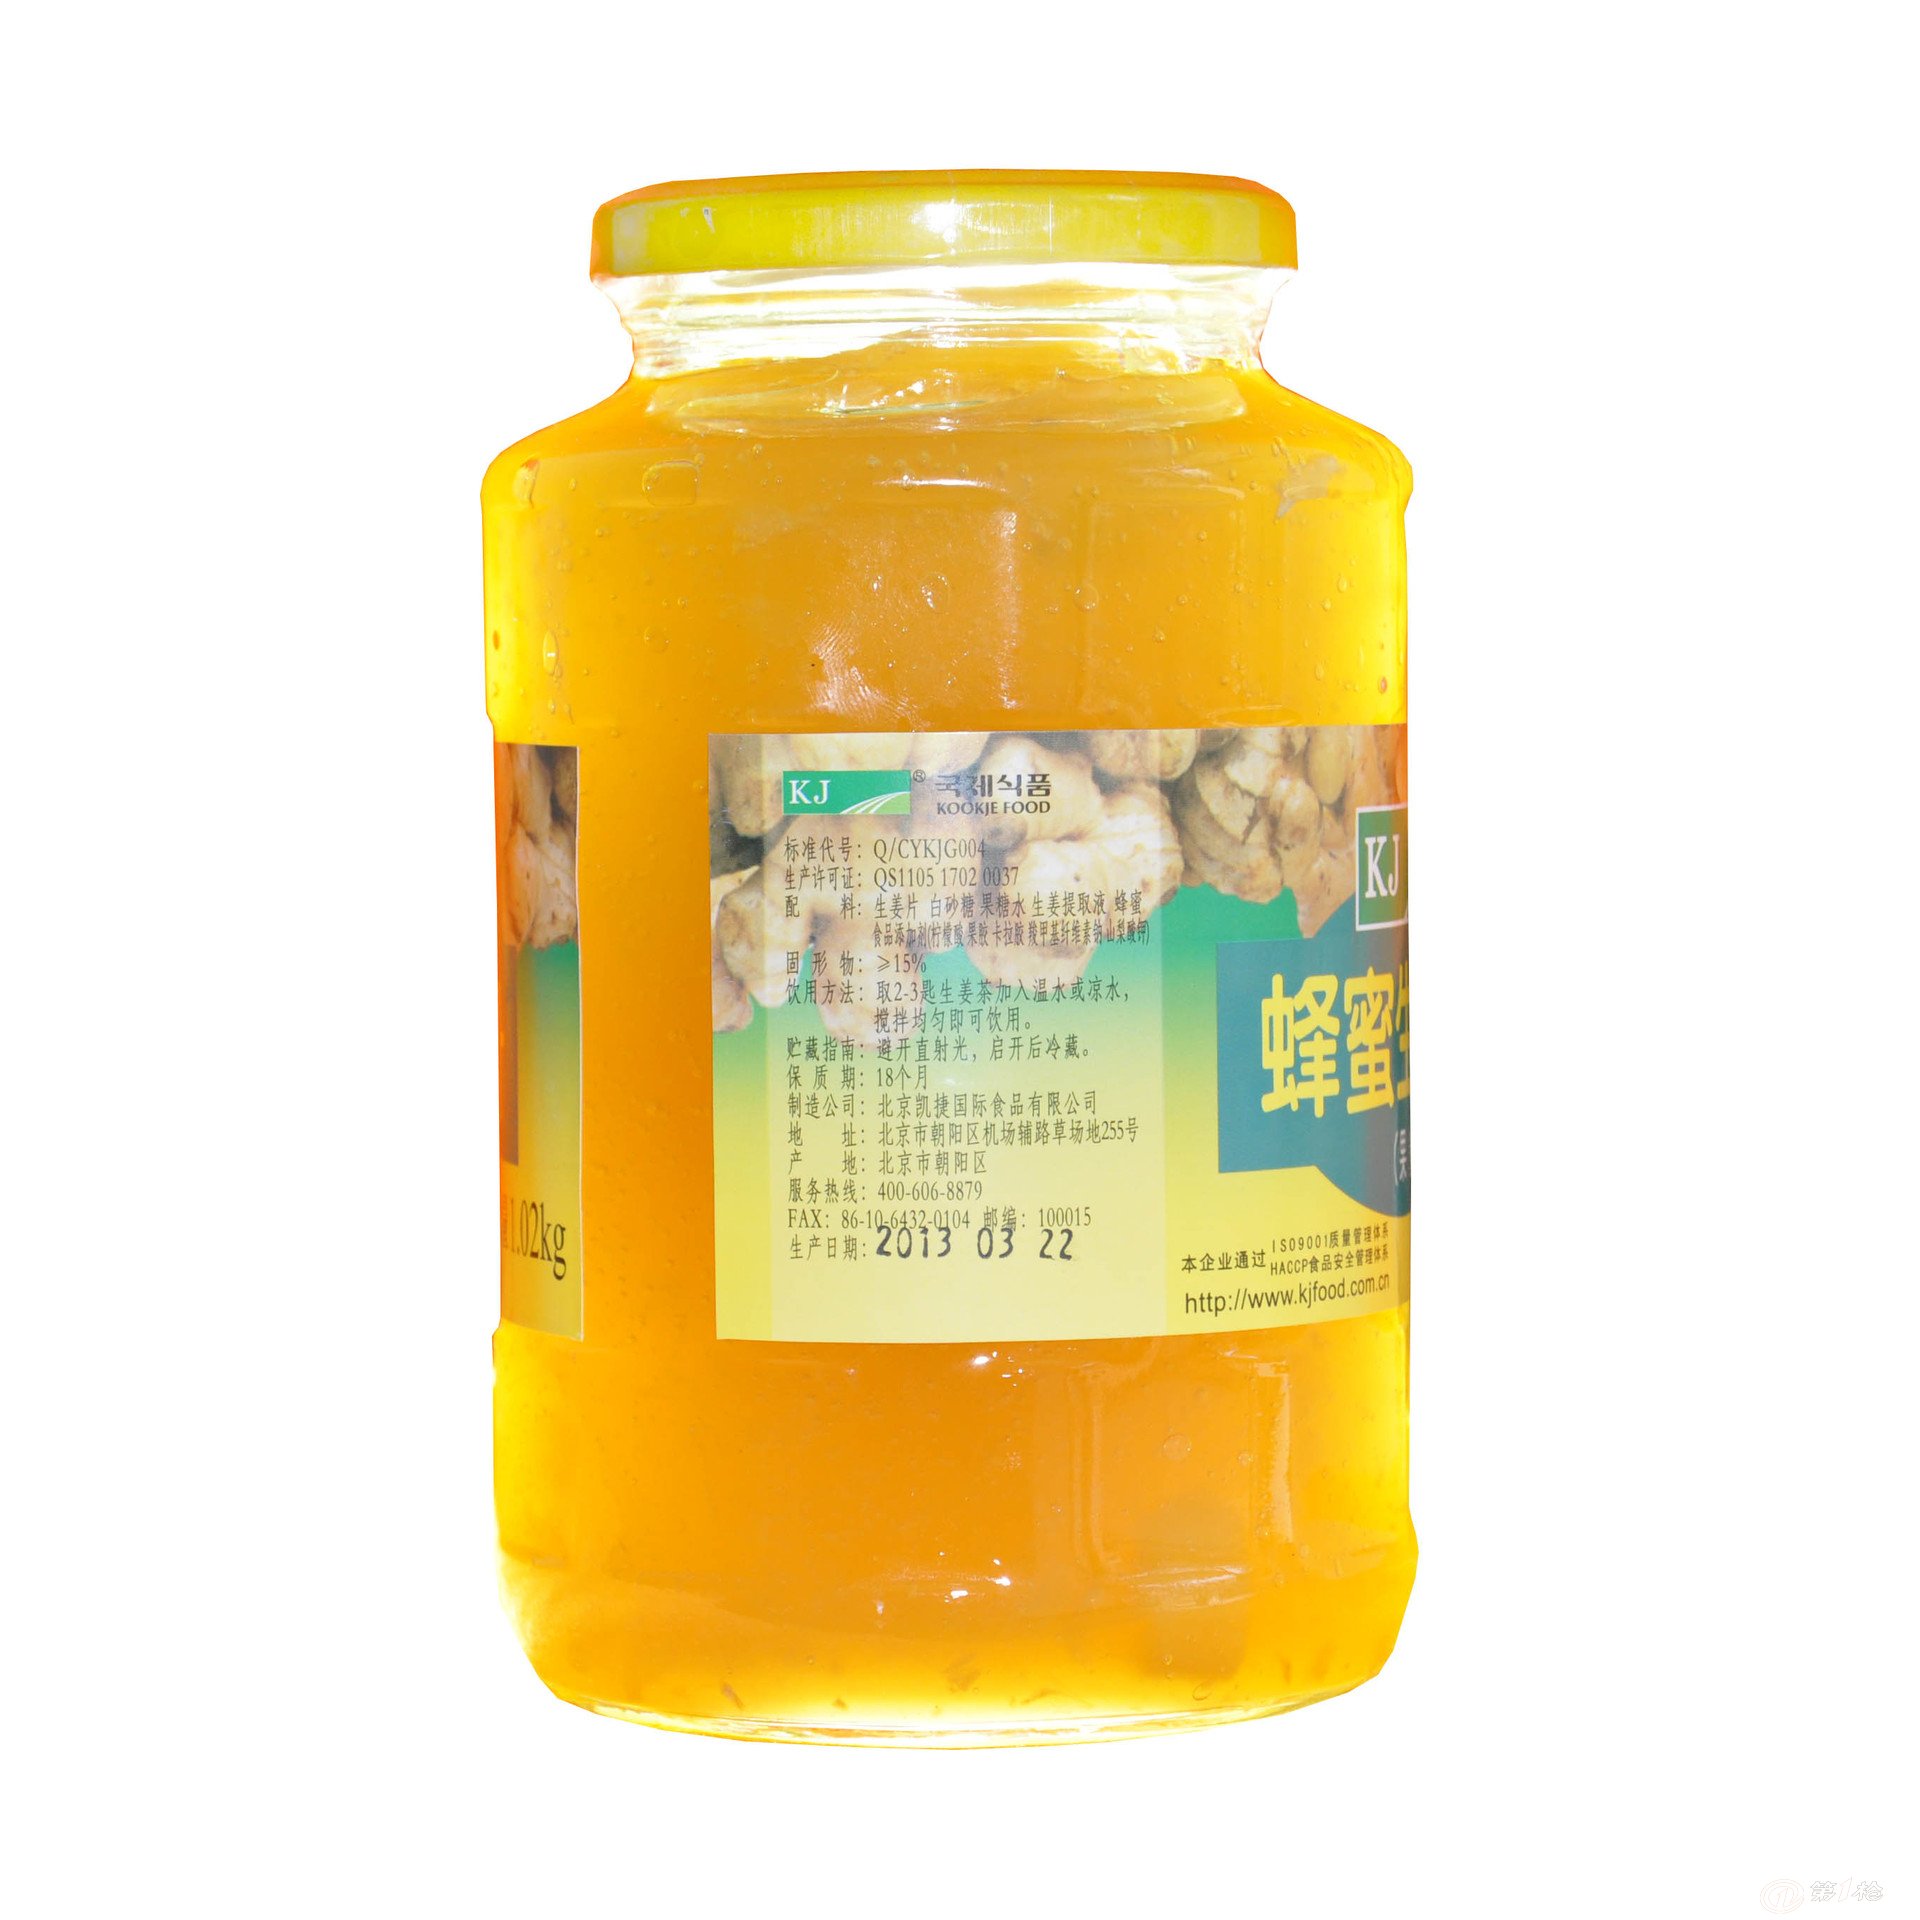 低价批发供应 KJ 蜂蜜生姜茶1020g 韩国进口原